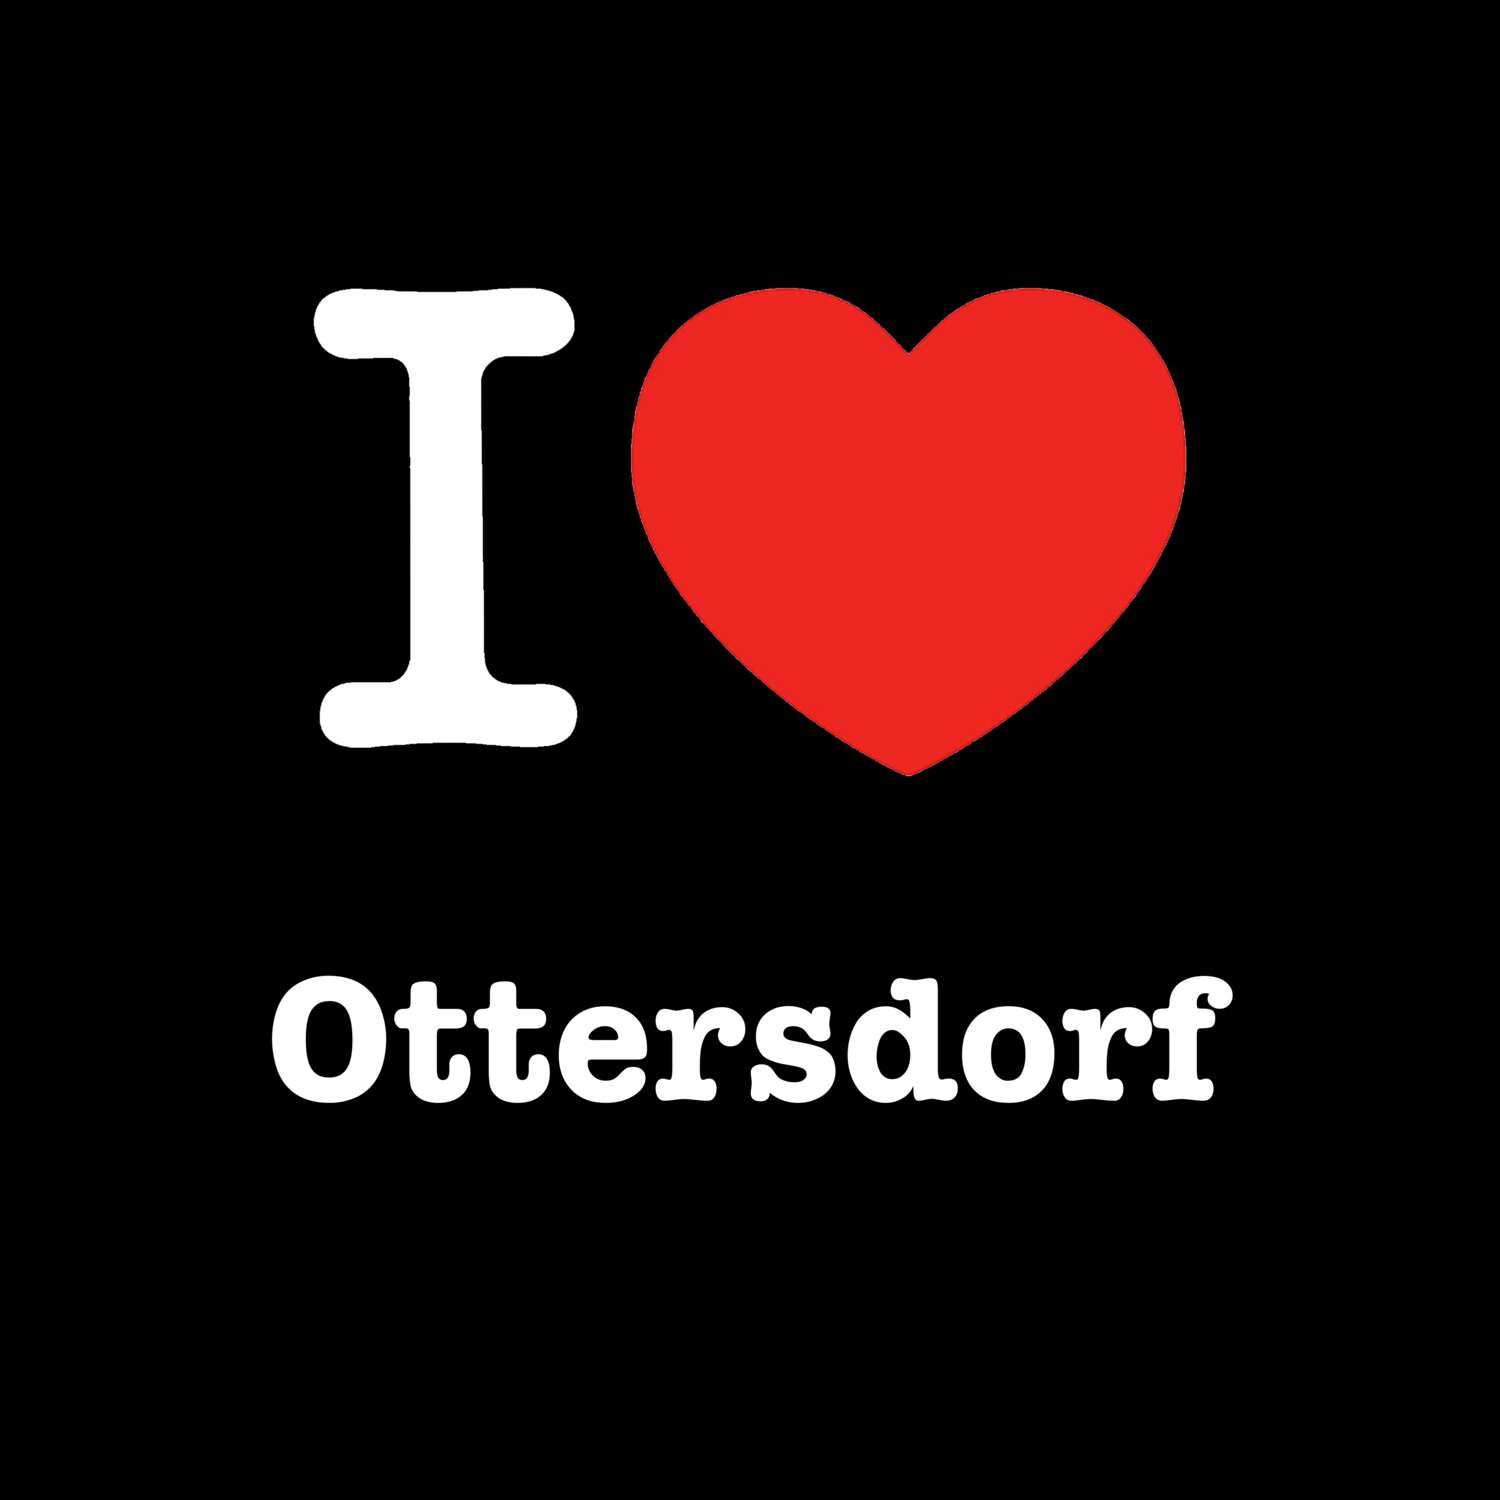 Ottersdorf T-Shirt »I love«